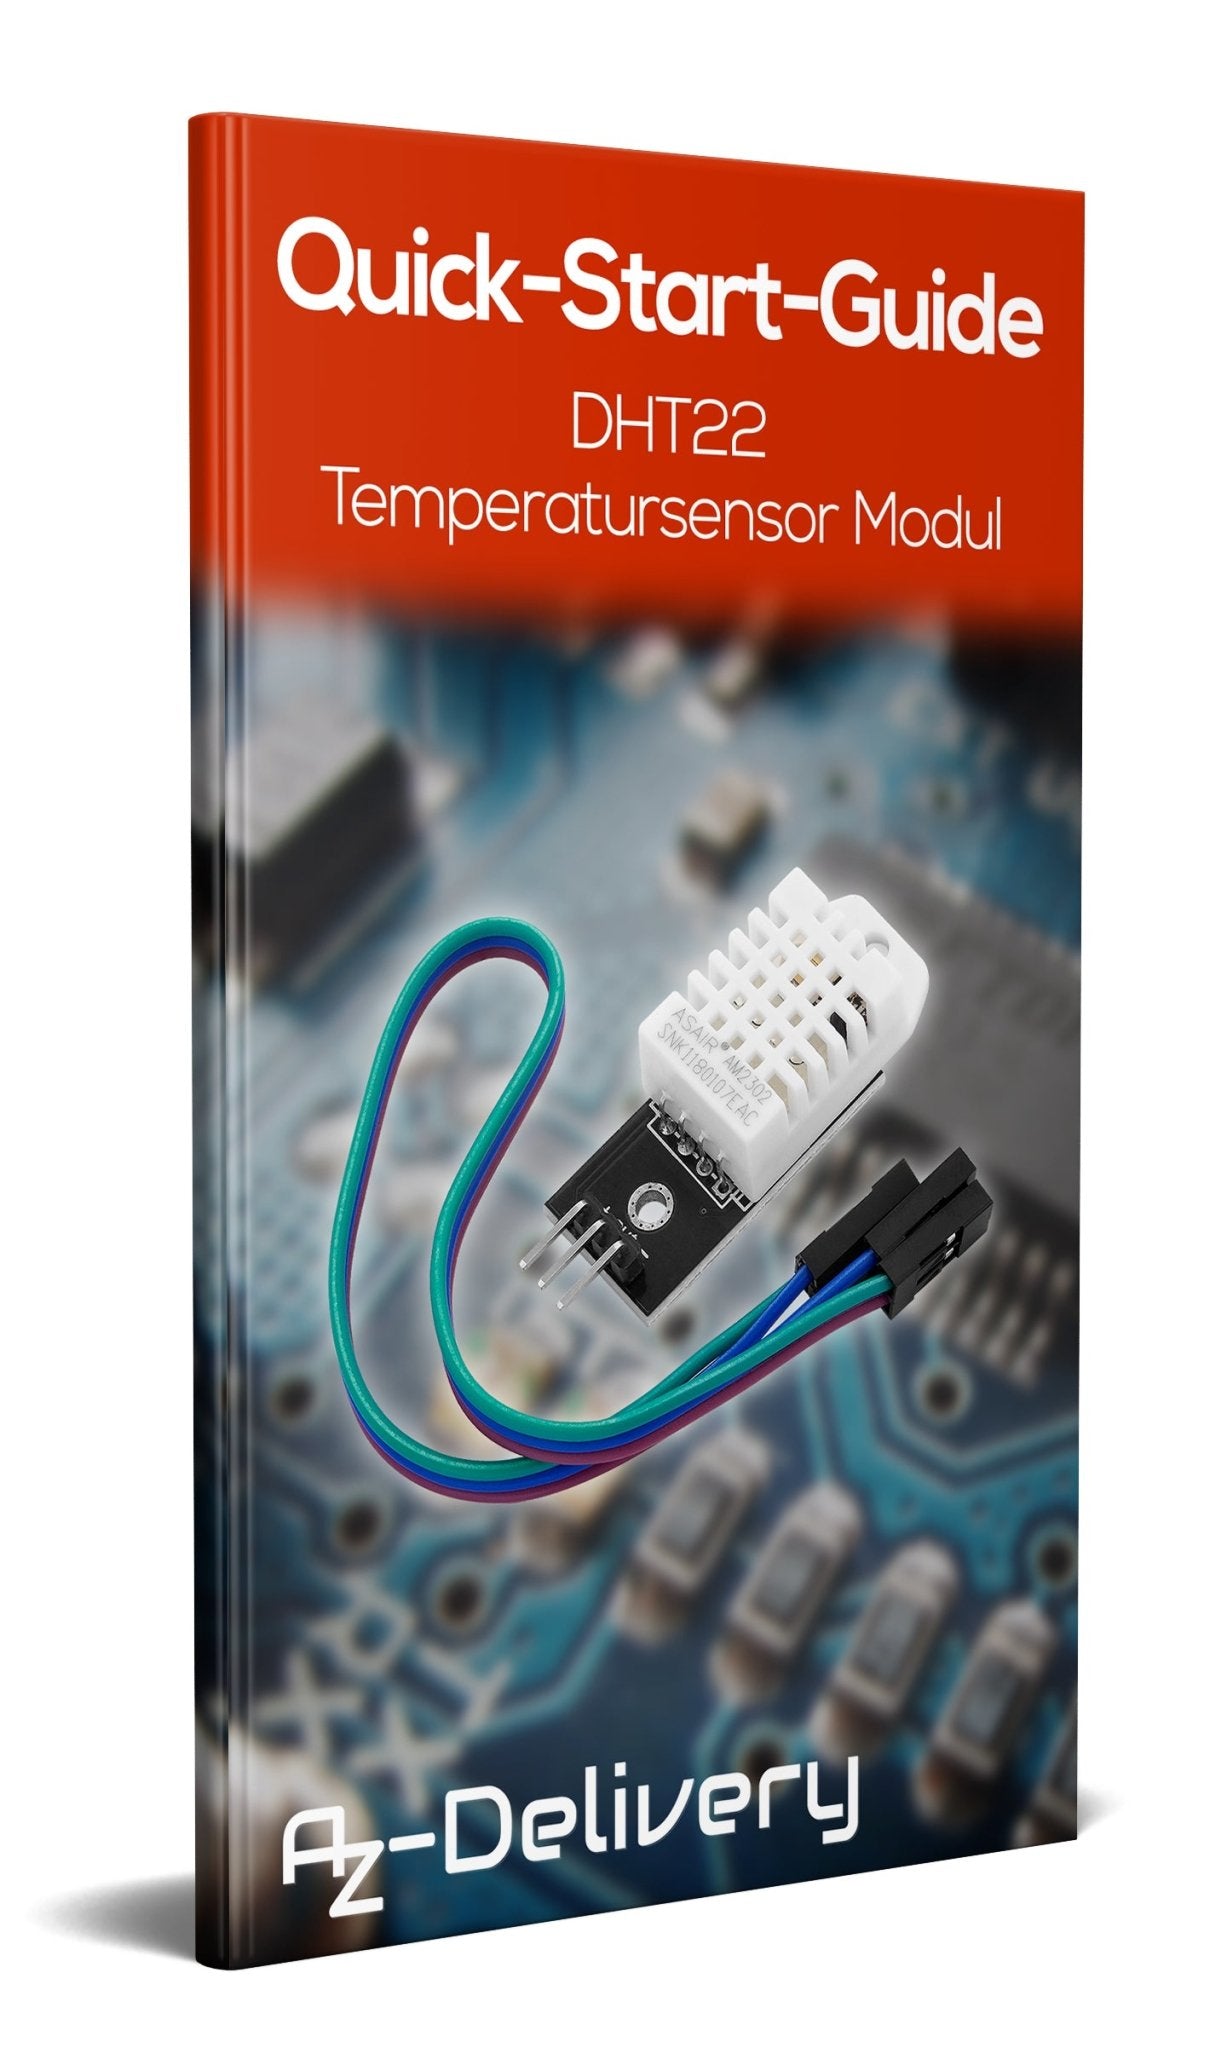 DHT22 AM2302 Temperatursensor und Luftfeuchtigkeitssensor mit Platine und Kabel - AZ-Delivery